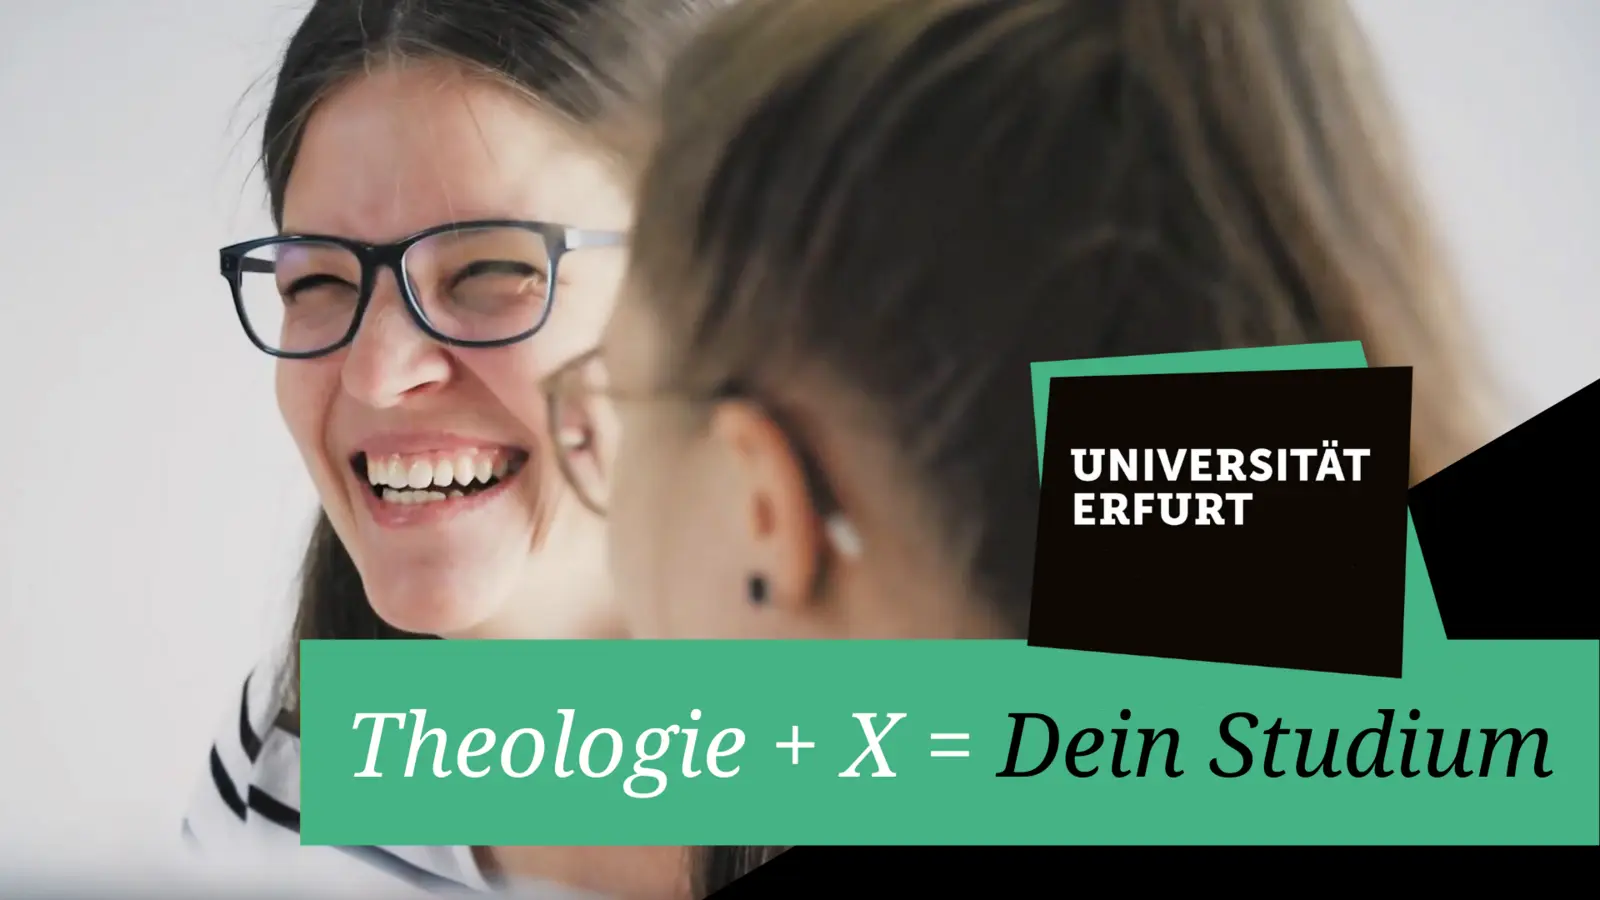 Vorschaubild für das Video "Theologie + X = Dein Studium"